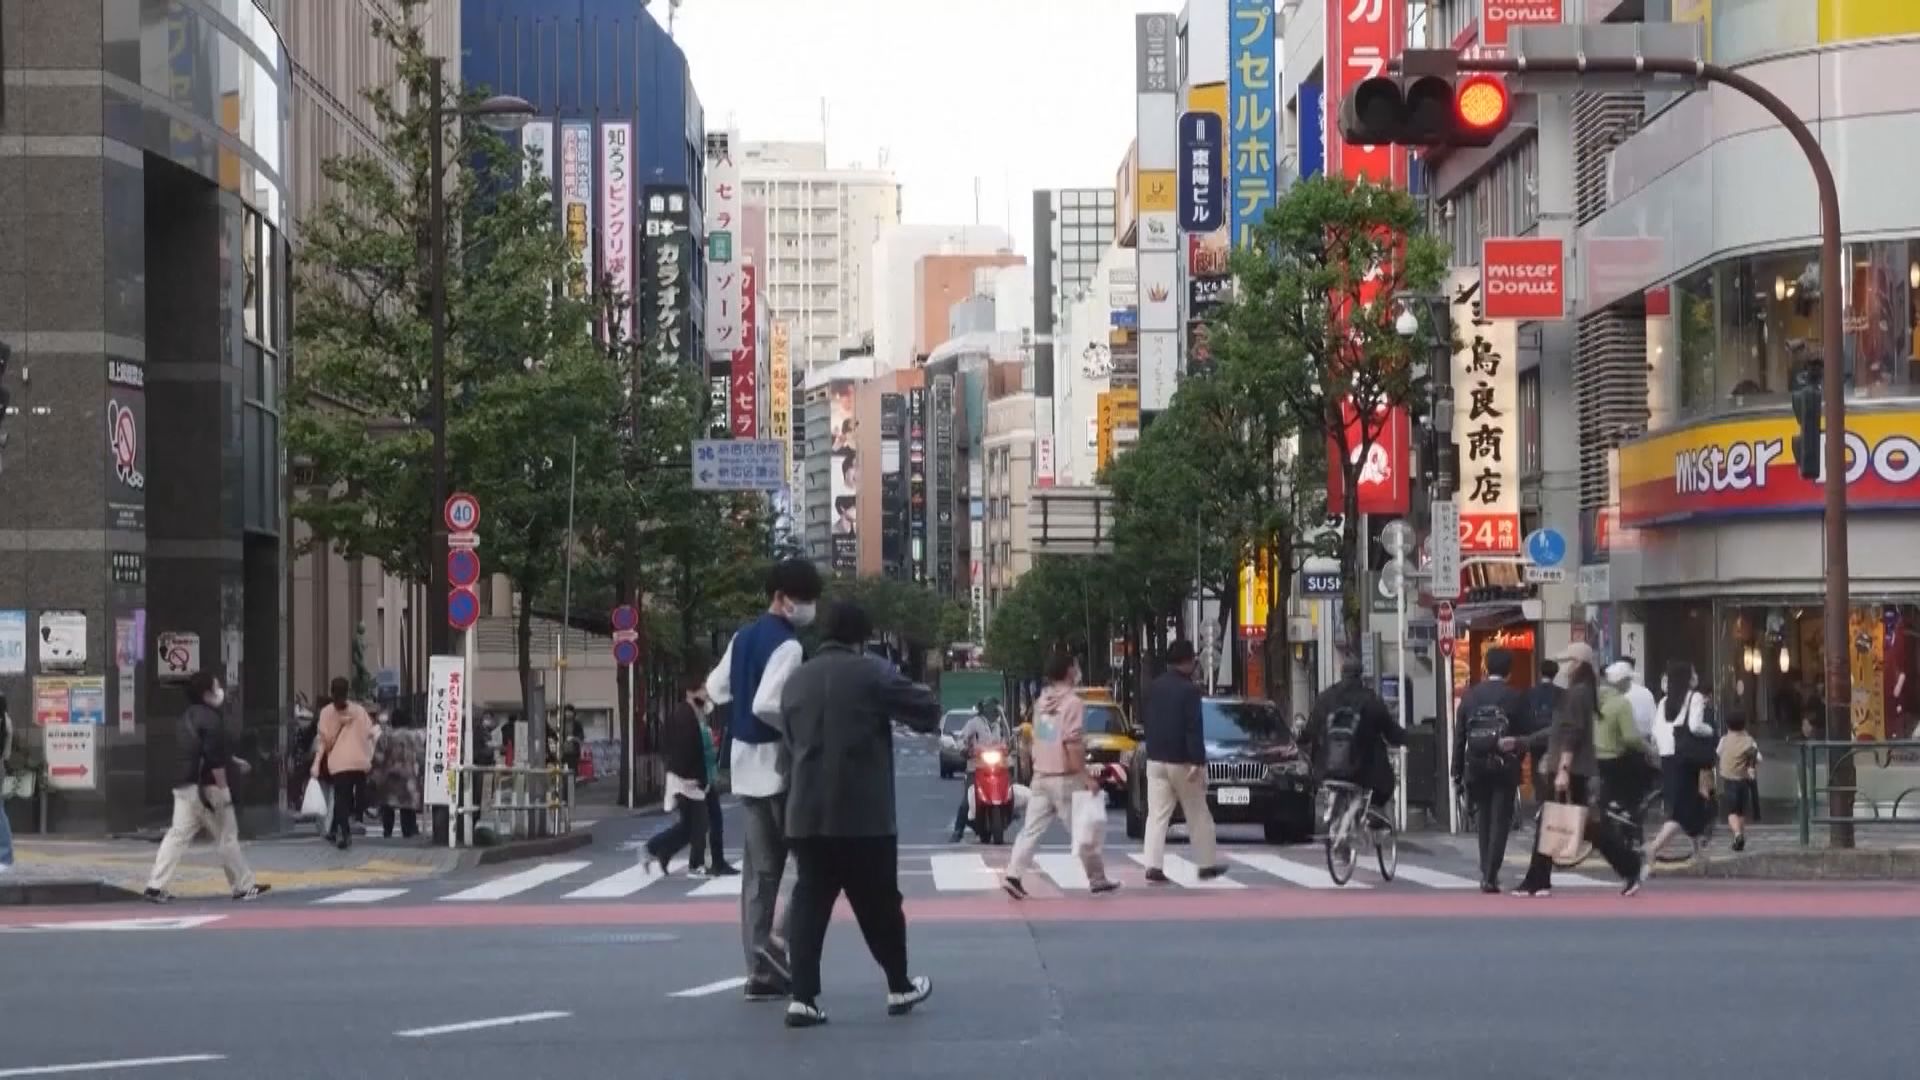 東京 蔓延 防止 新型コロナ: まん延防止を全面解除へ